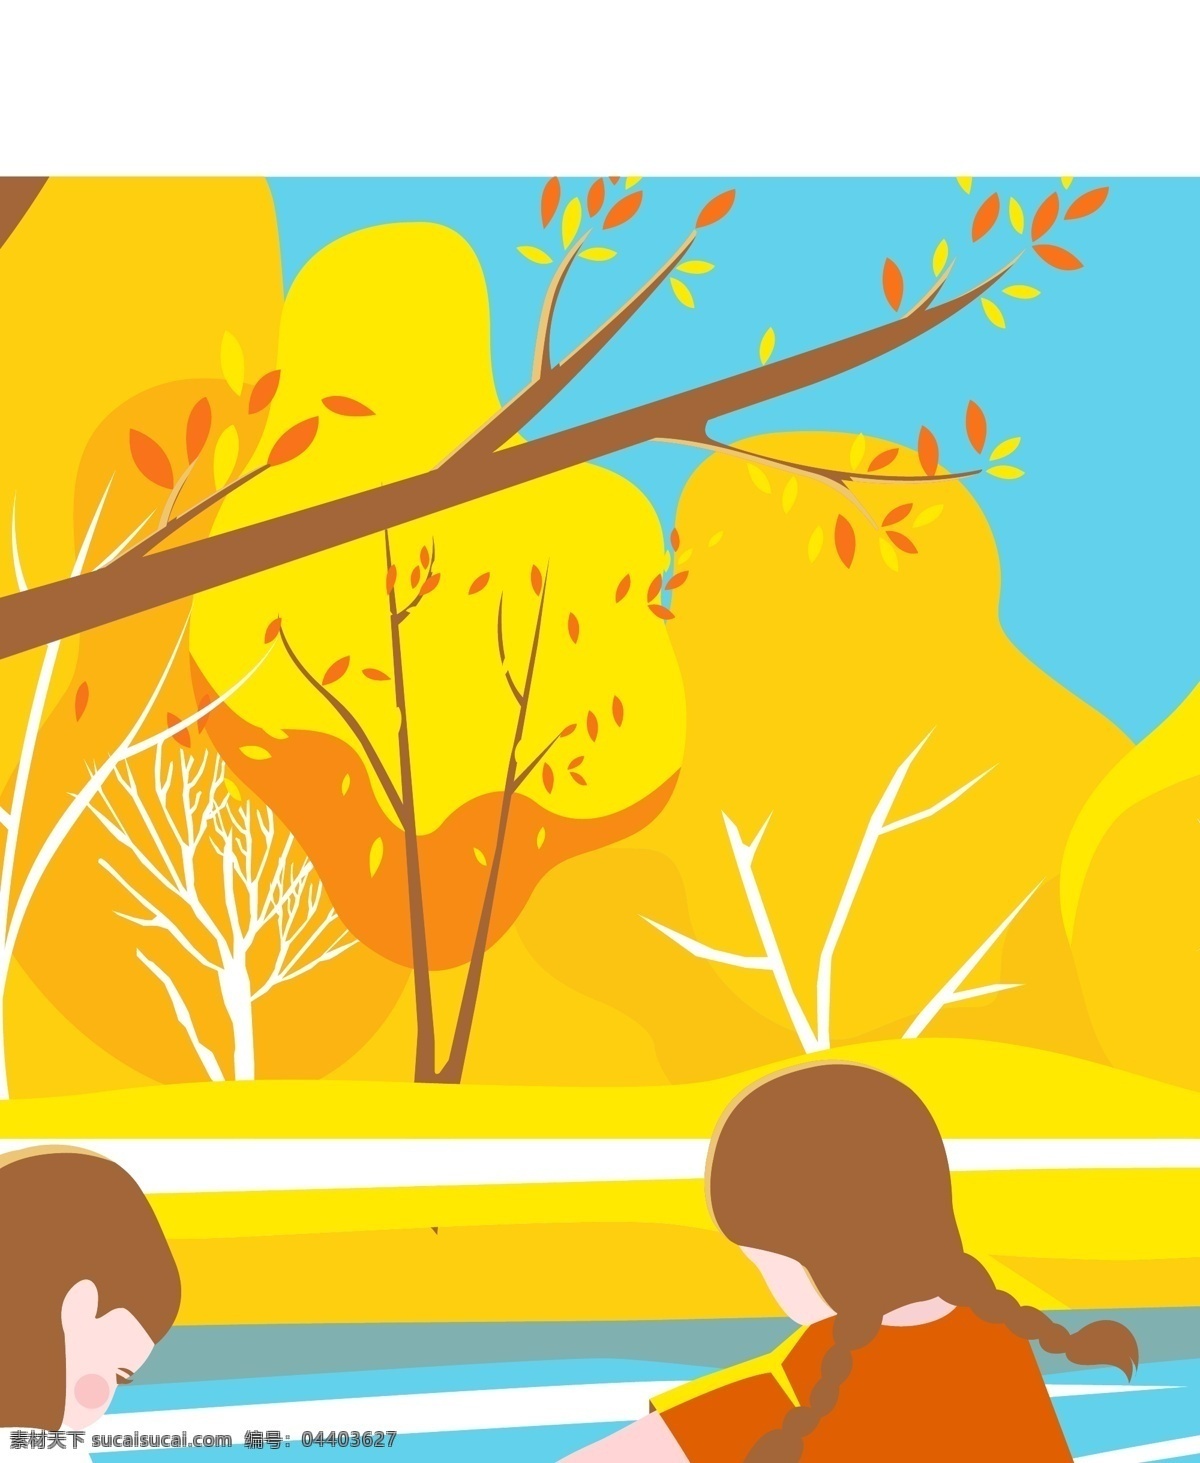 秋天 森林 玩耍 女孩 小孩 友谊 金色 童年 小河 树林 溪流 牵手 转圈 矢量 秋 彩色 手绘 动漫动画